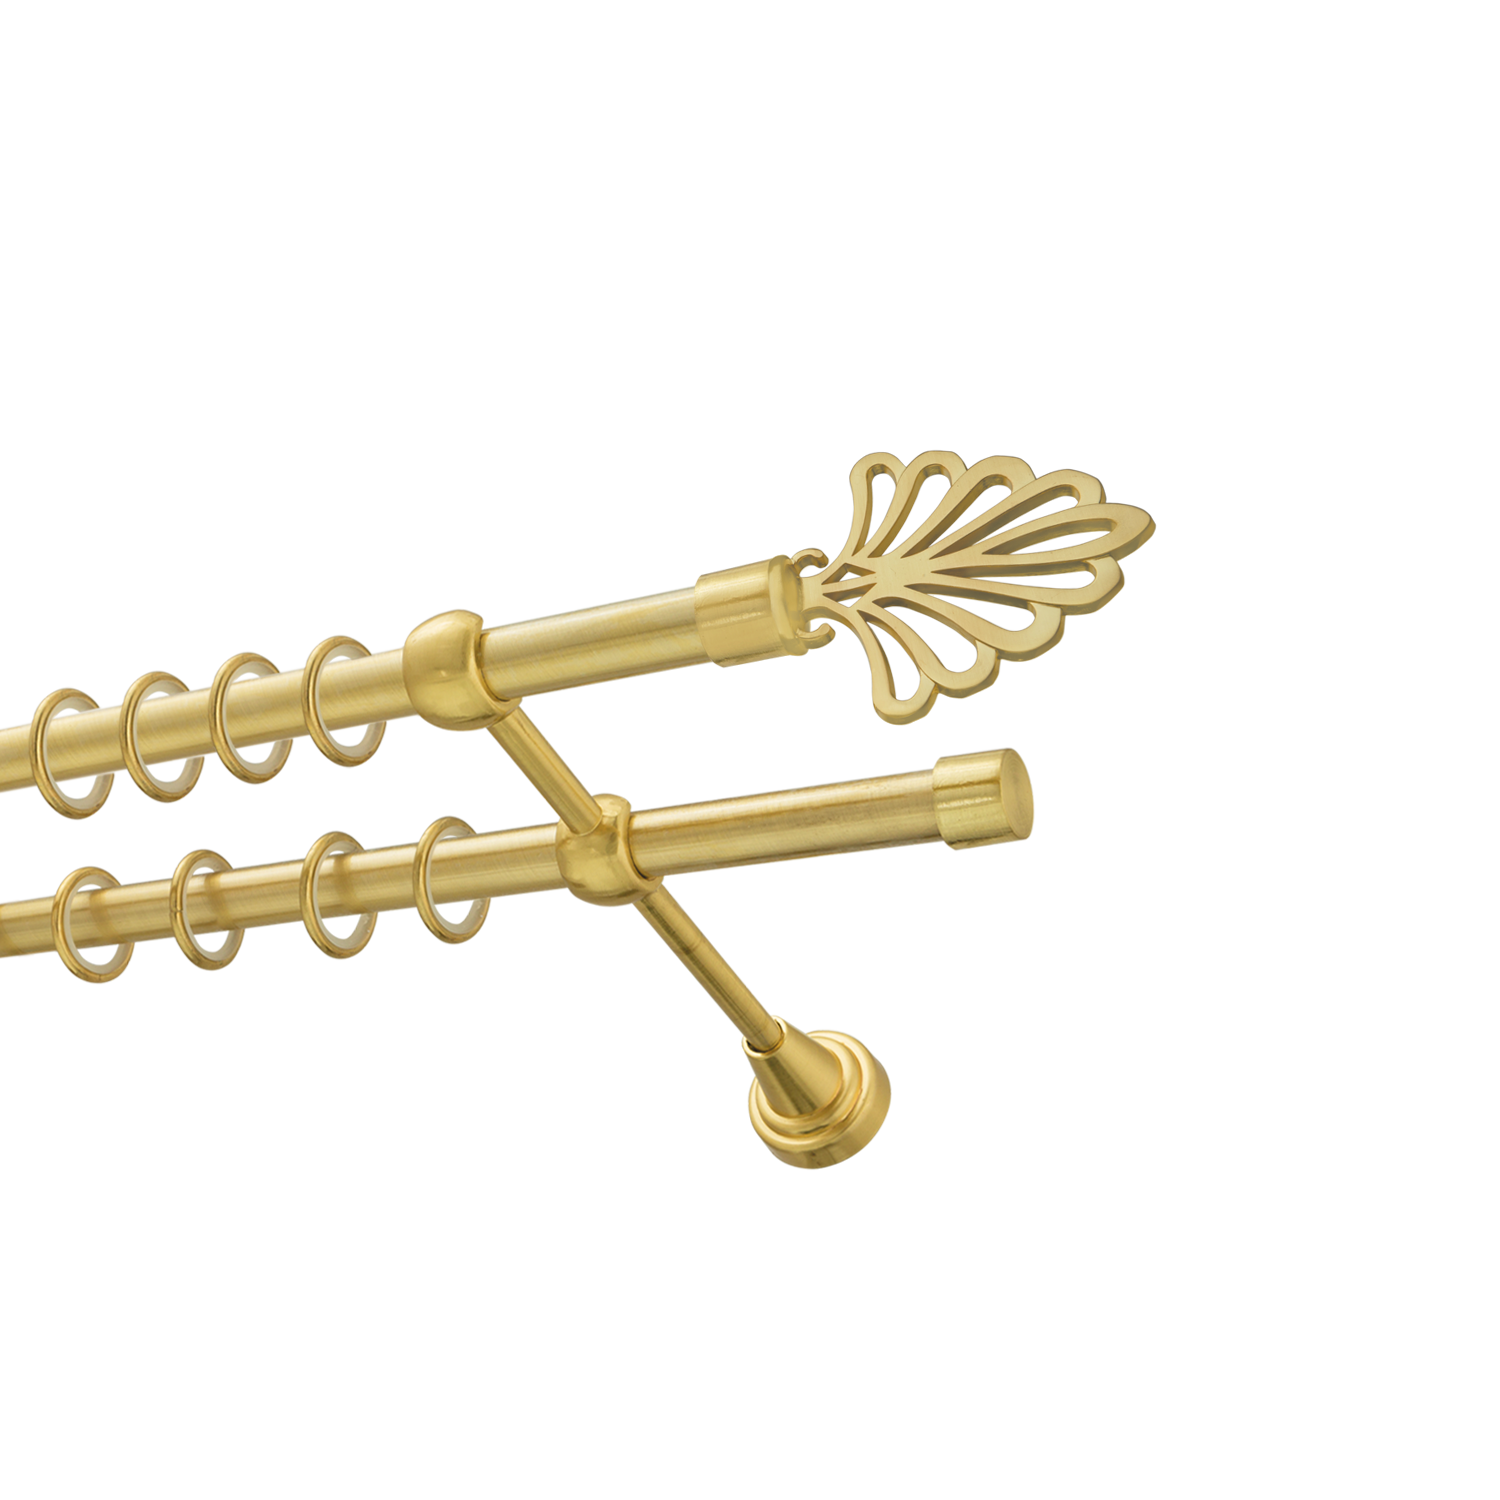 Металлический карниз для штор Бутик, двухрядный 16/16 мм, золото, гладкая штанга, длина 200 см - фото Wikidecor.ru